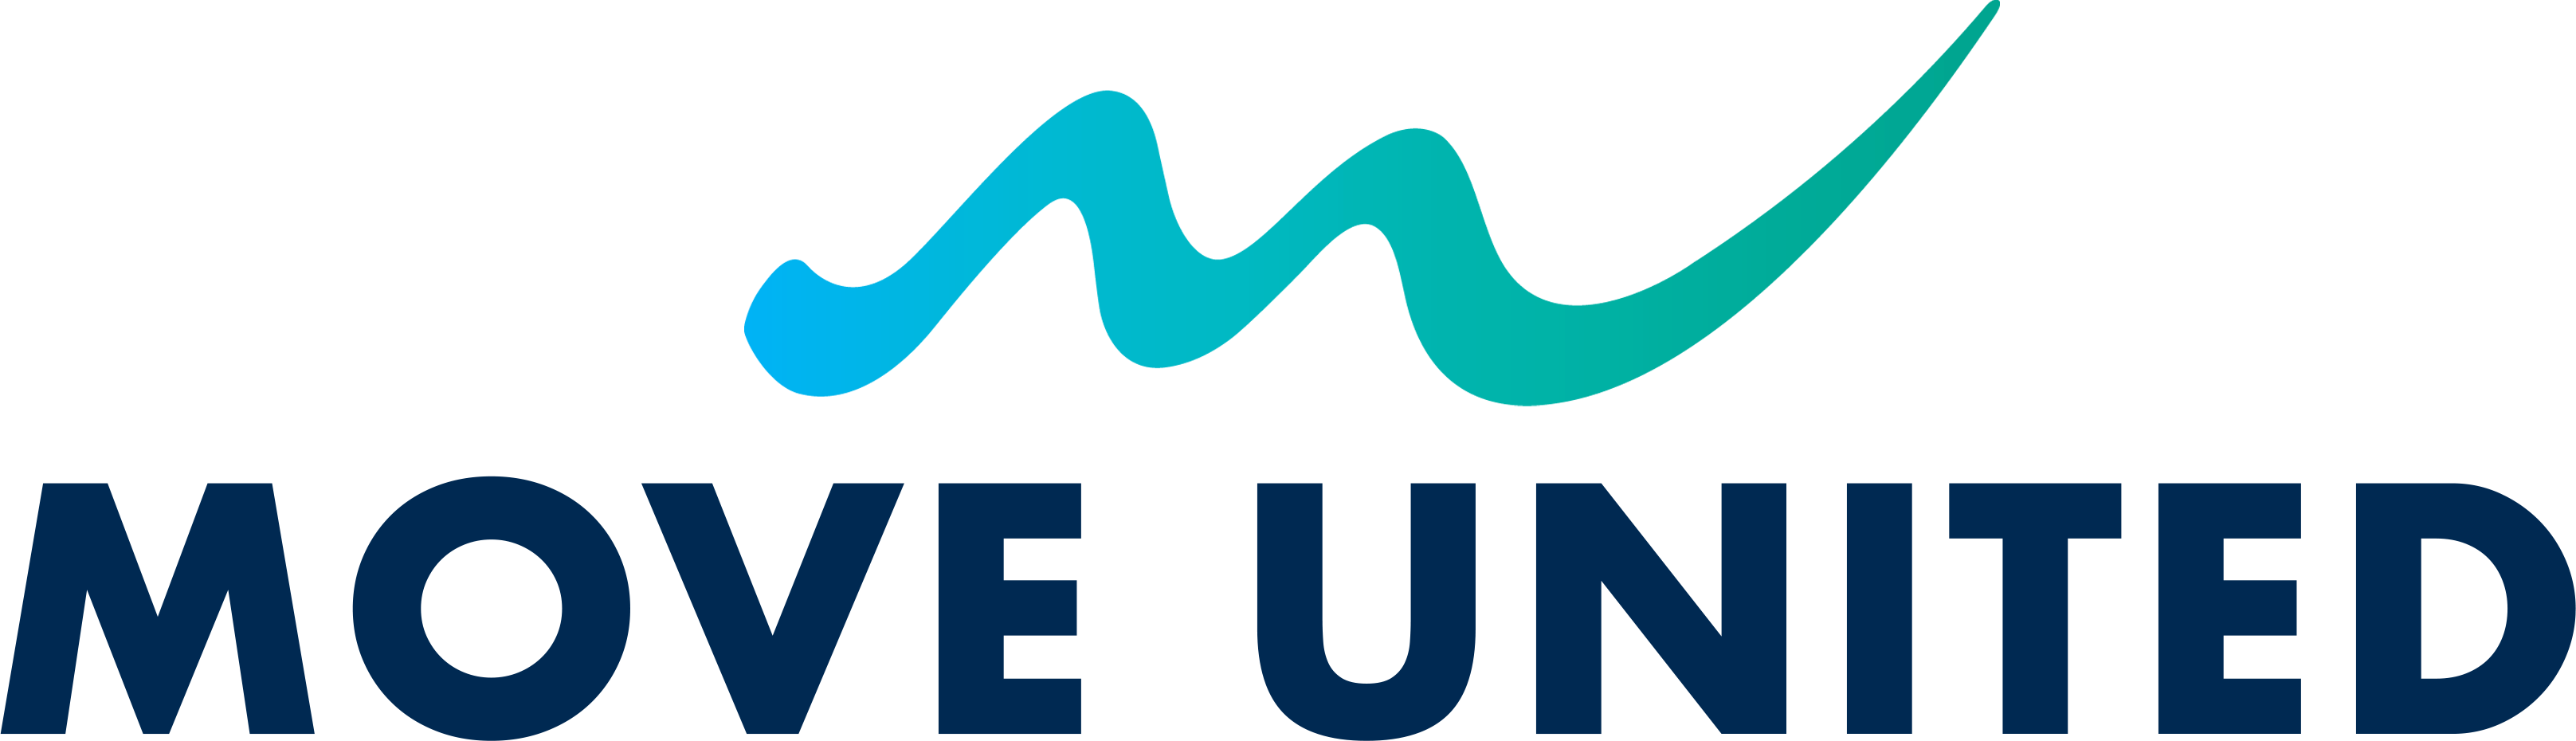 Move United logo. Et bølget m der varierer i farve fra lyseblå i venstre side til mørkegrøn i højre side. Tryk for at komme til forsiden